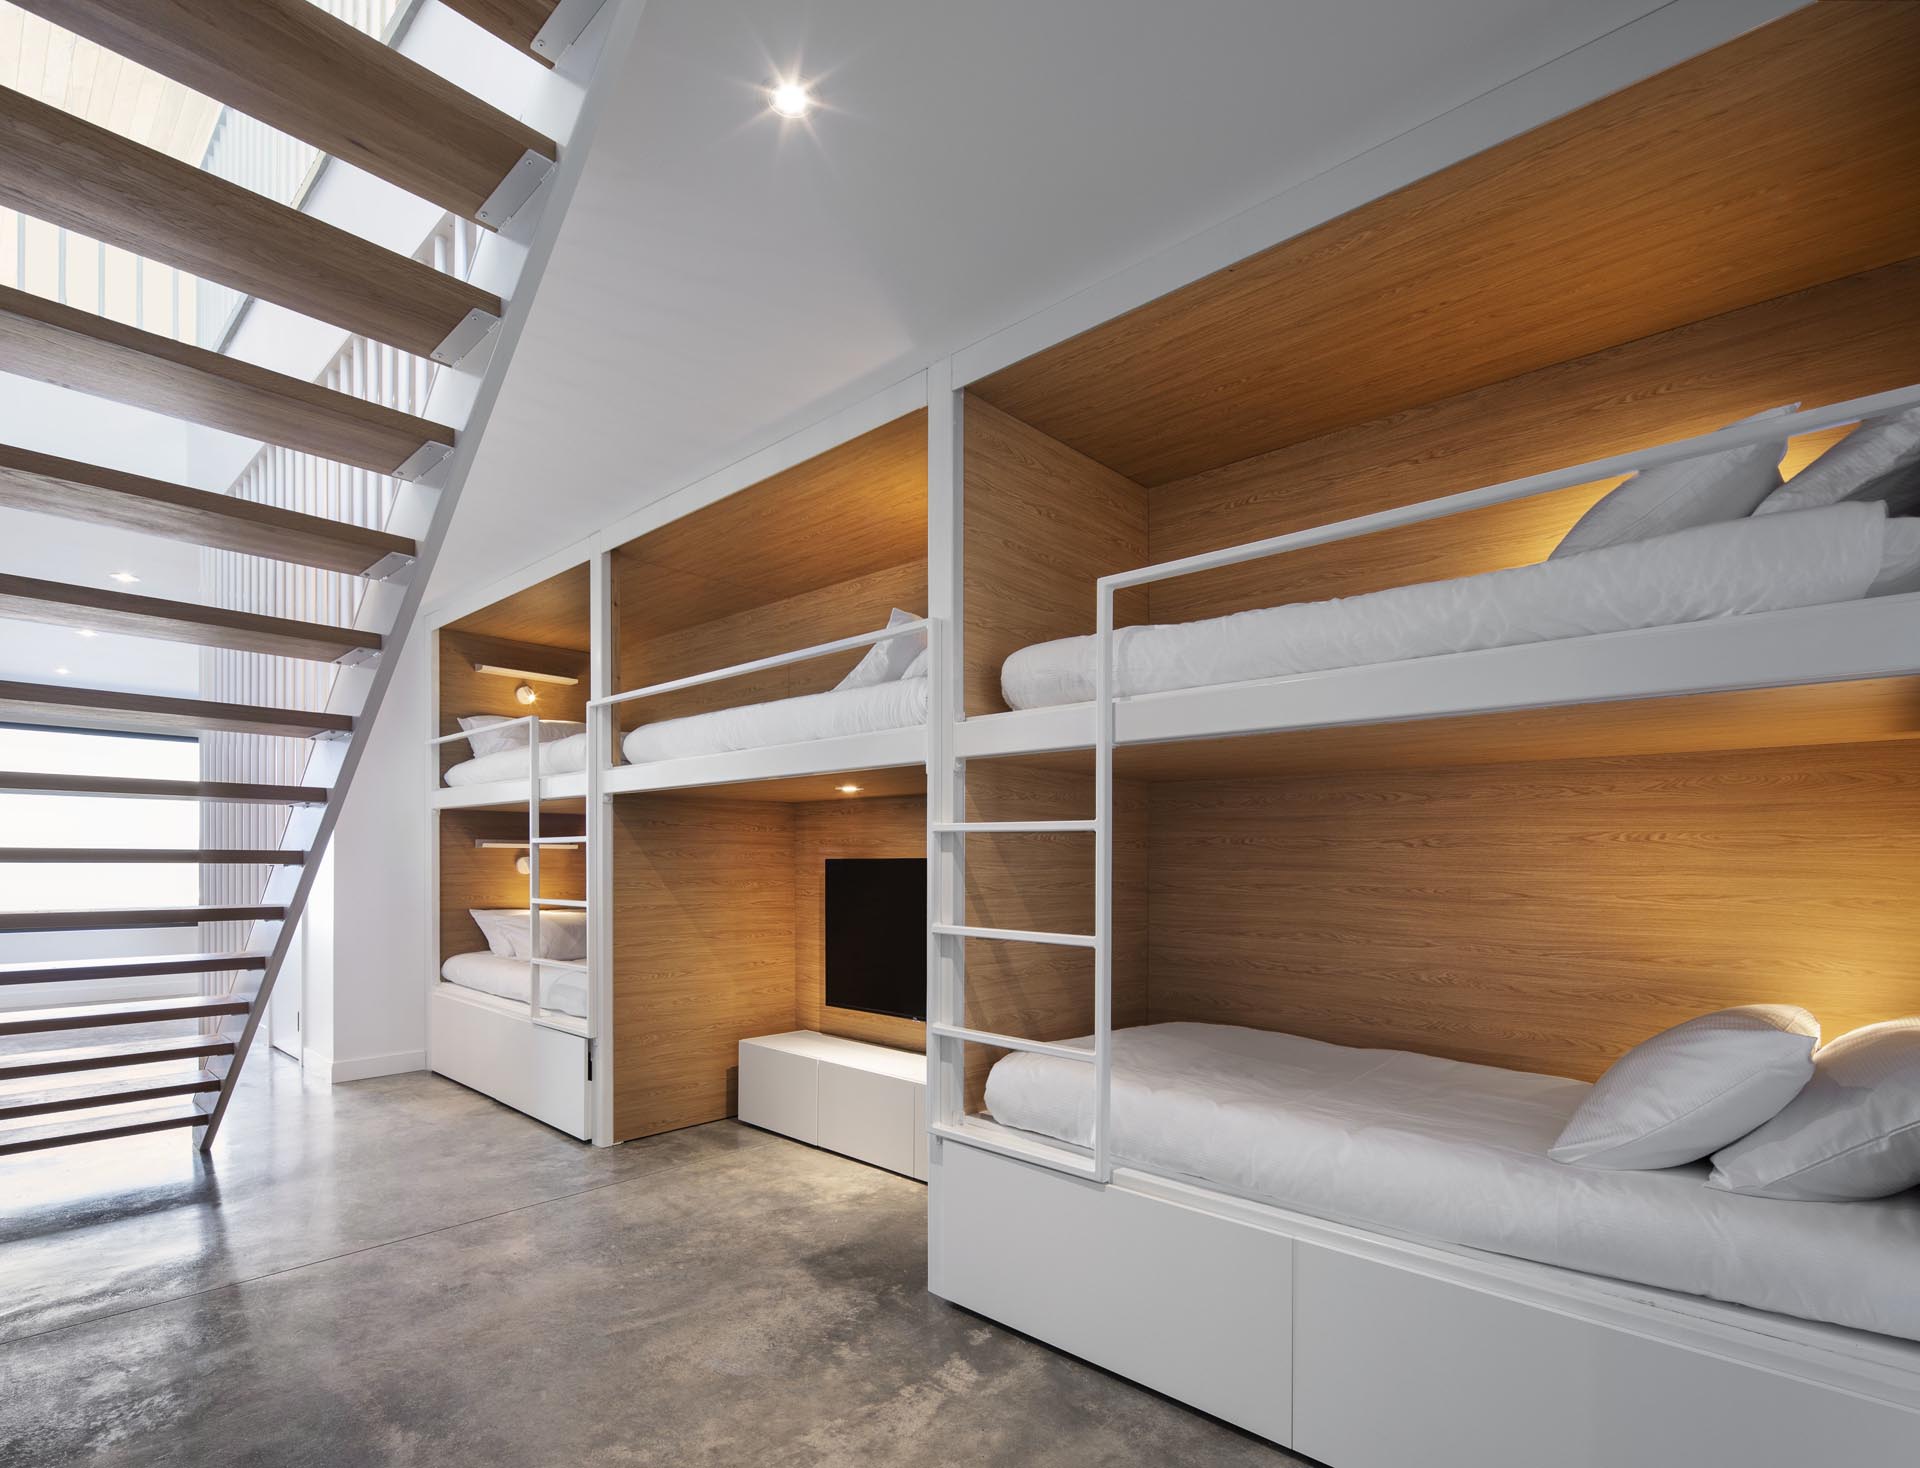 У подножия этой современной лестницы, ведущей в коридор, стоят несколько комплектов двухъярусных кроватей. Эти двухъярусные кровати имеют интерьер из дерева, с белыми ужинами и лестницами, которые сочетаются со стенами.